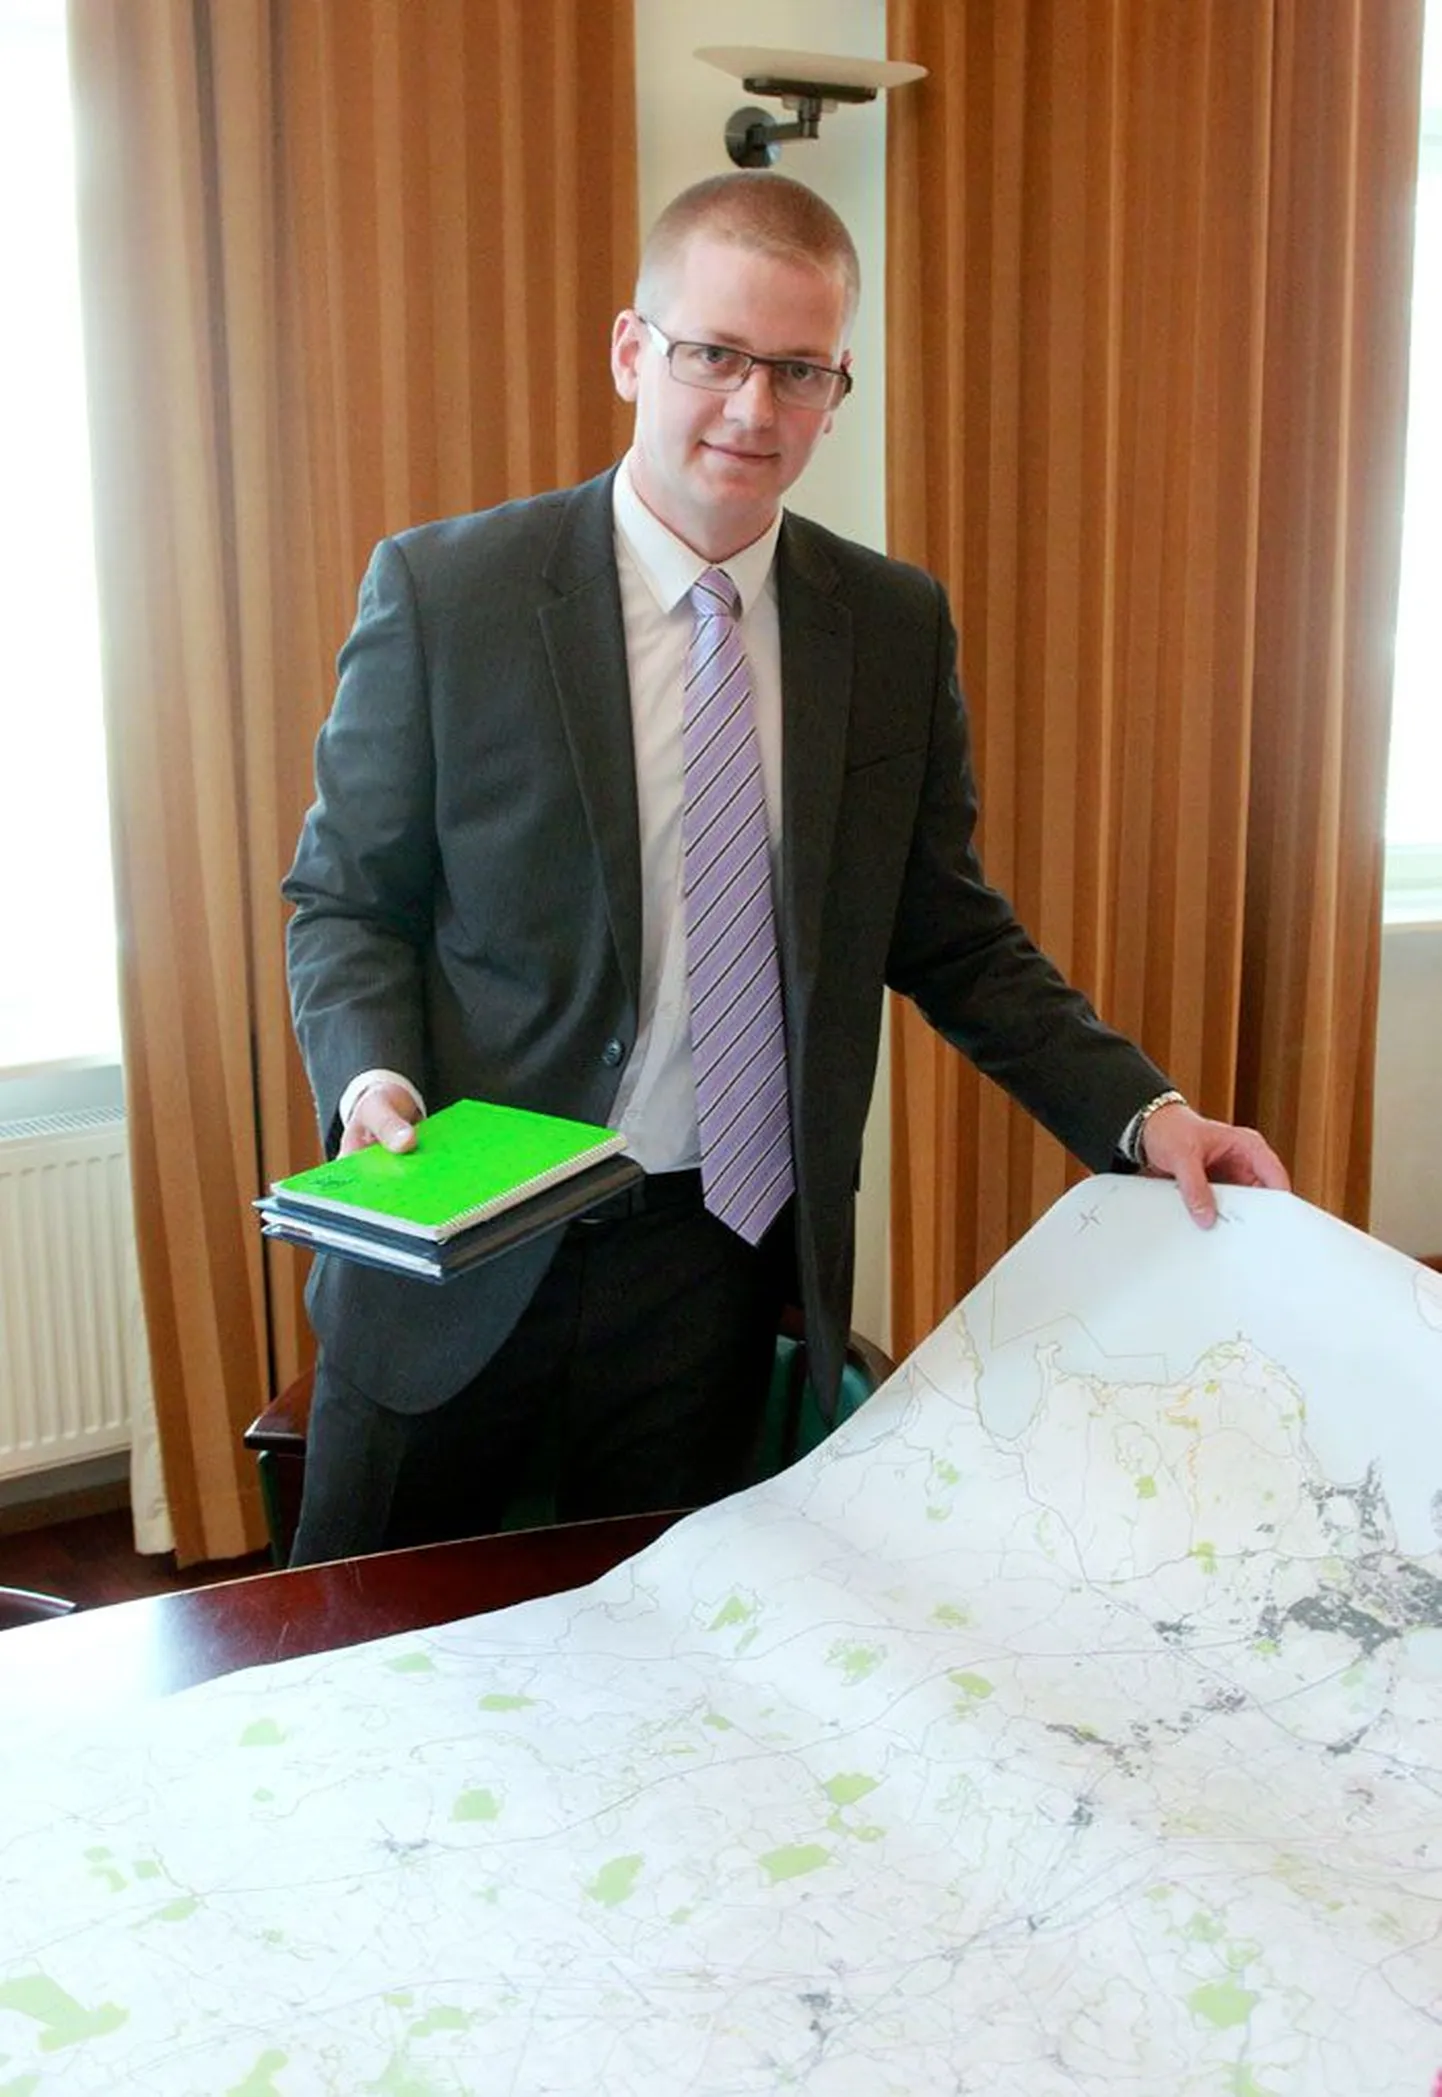 Мийко Перис развернул карту, на которой обозначены трассы, по которым через десять лет может пройти Rail Baltic на территории Эстонии.